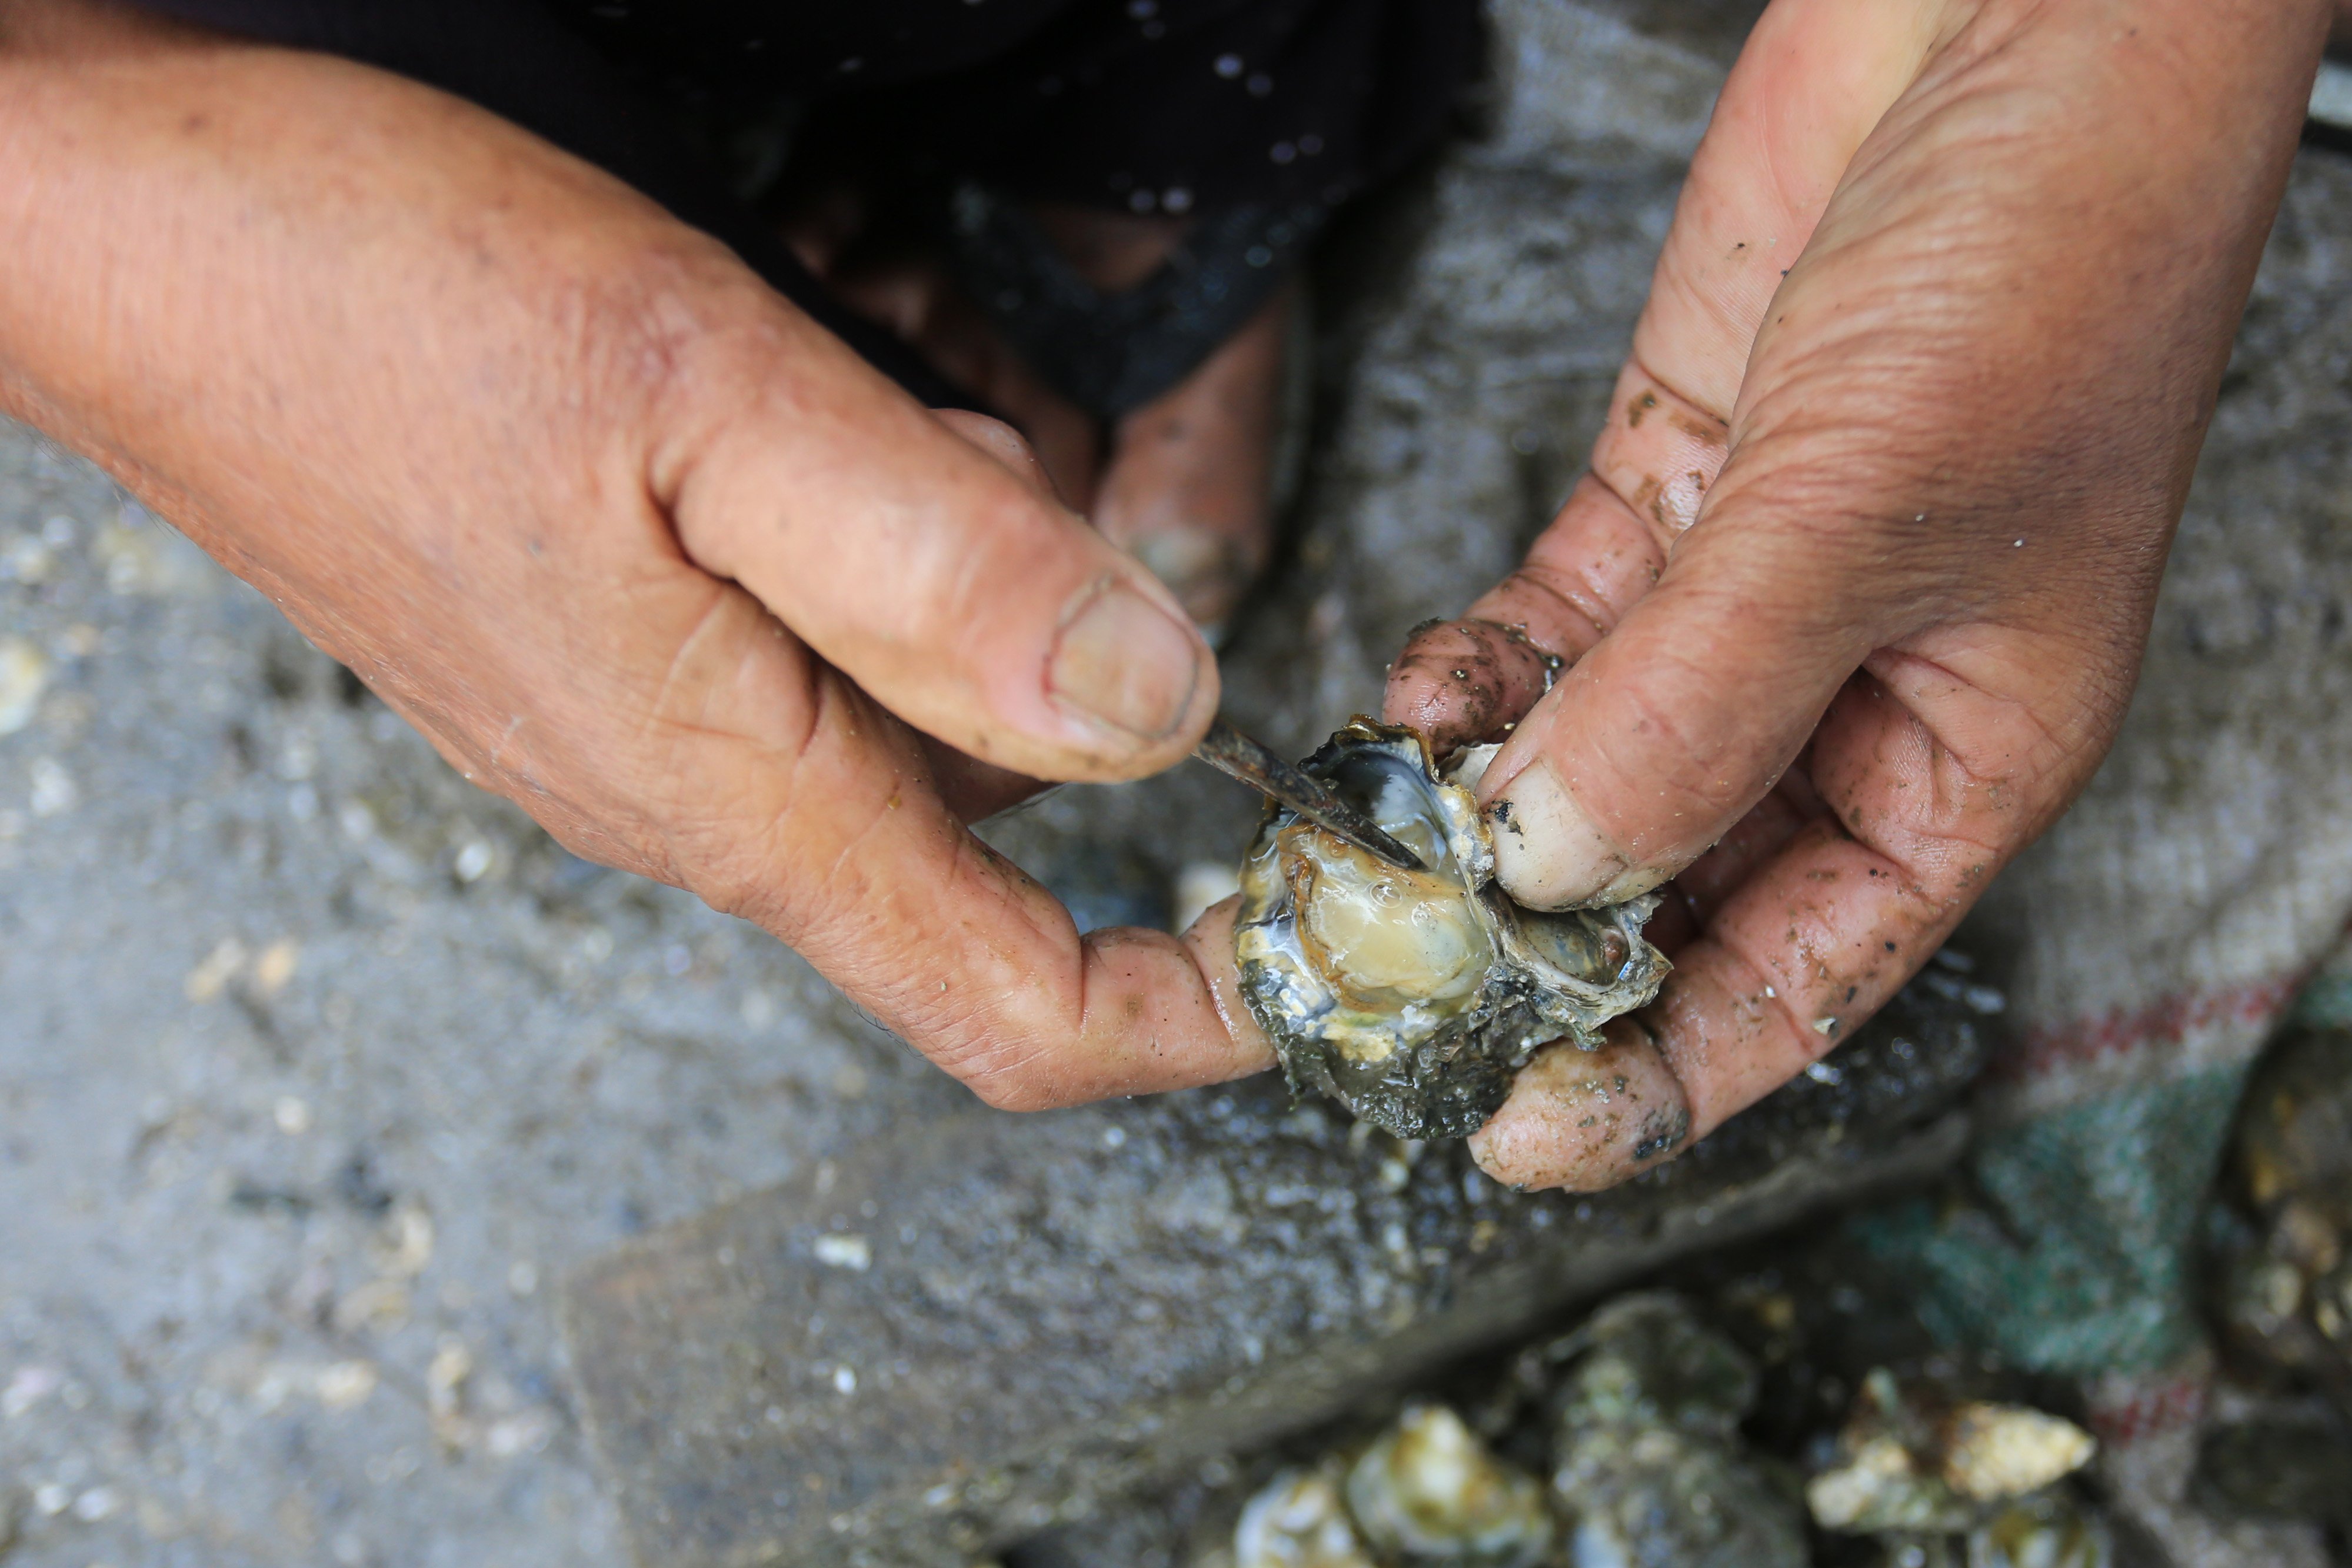 Pekerja mencokel satu demi satu karang batu dan kulit tiram untuk diambil dagingnya. Tak jarang kaki dan tangan mereka berdarah kena karang namun rasa sakit tersebut seketika hilang setelah mendapatkan tiram. Mereka biasanya mulai kerja pukul 7.30 wib sampai 12.30 wib, Desa Alue Naga, Kecamatan Syiah Kuala, Banda Aceh, Kamis (7/10/2021).